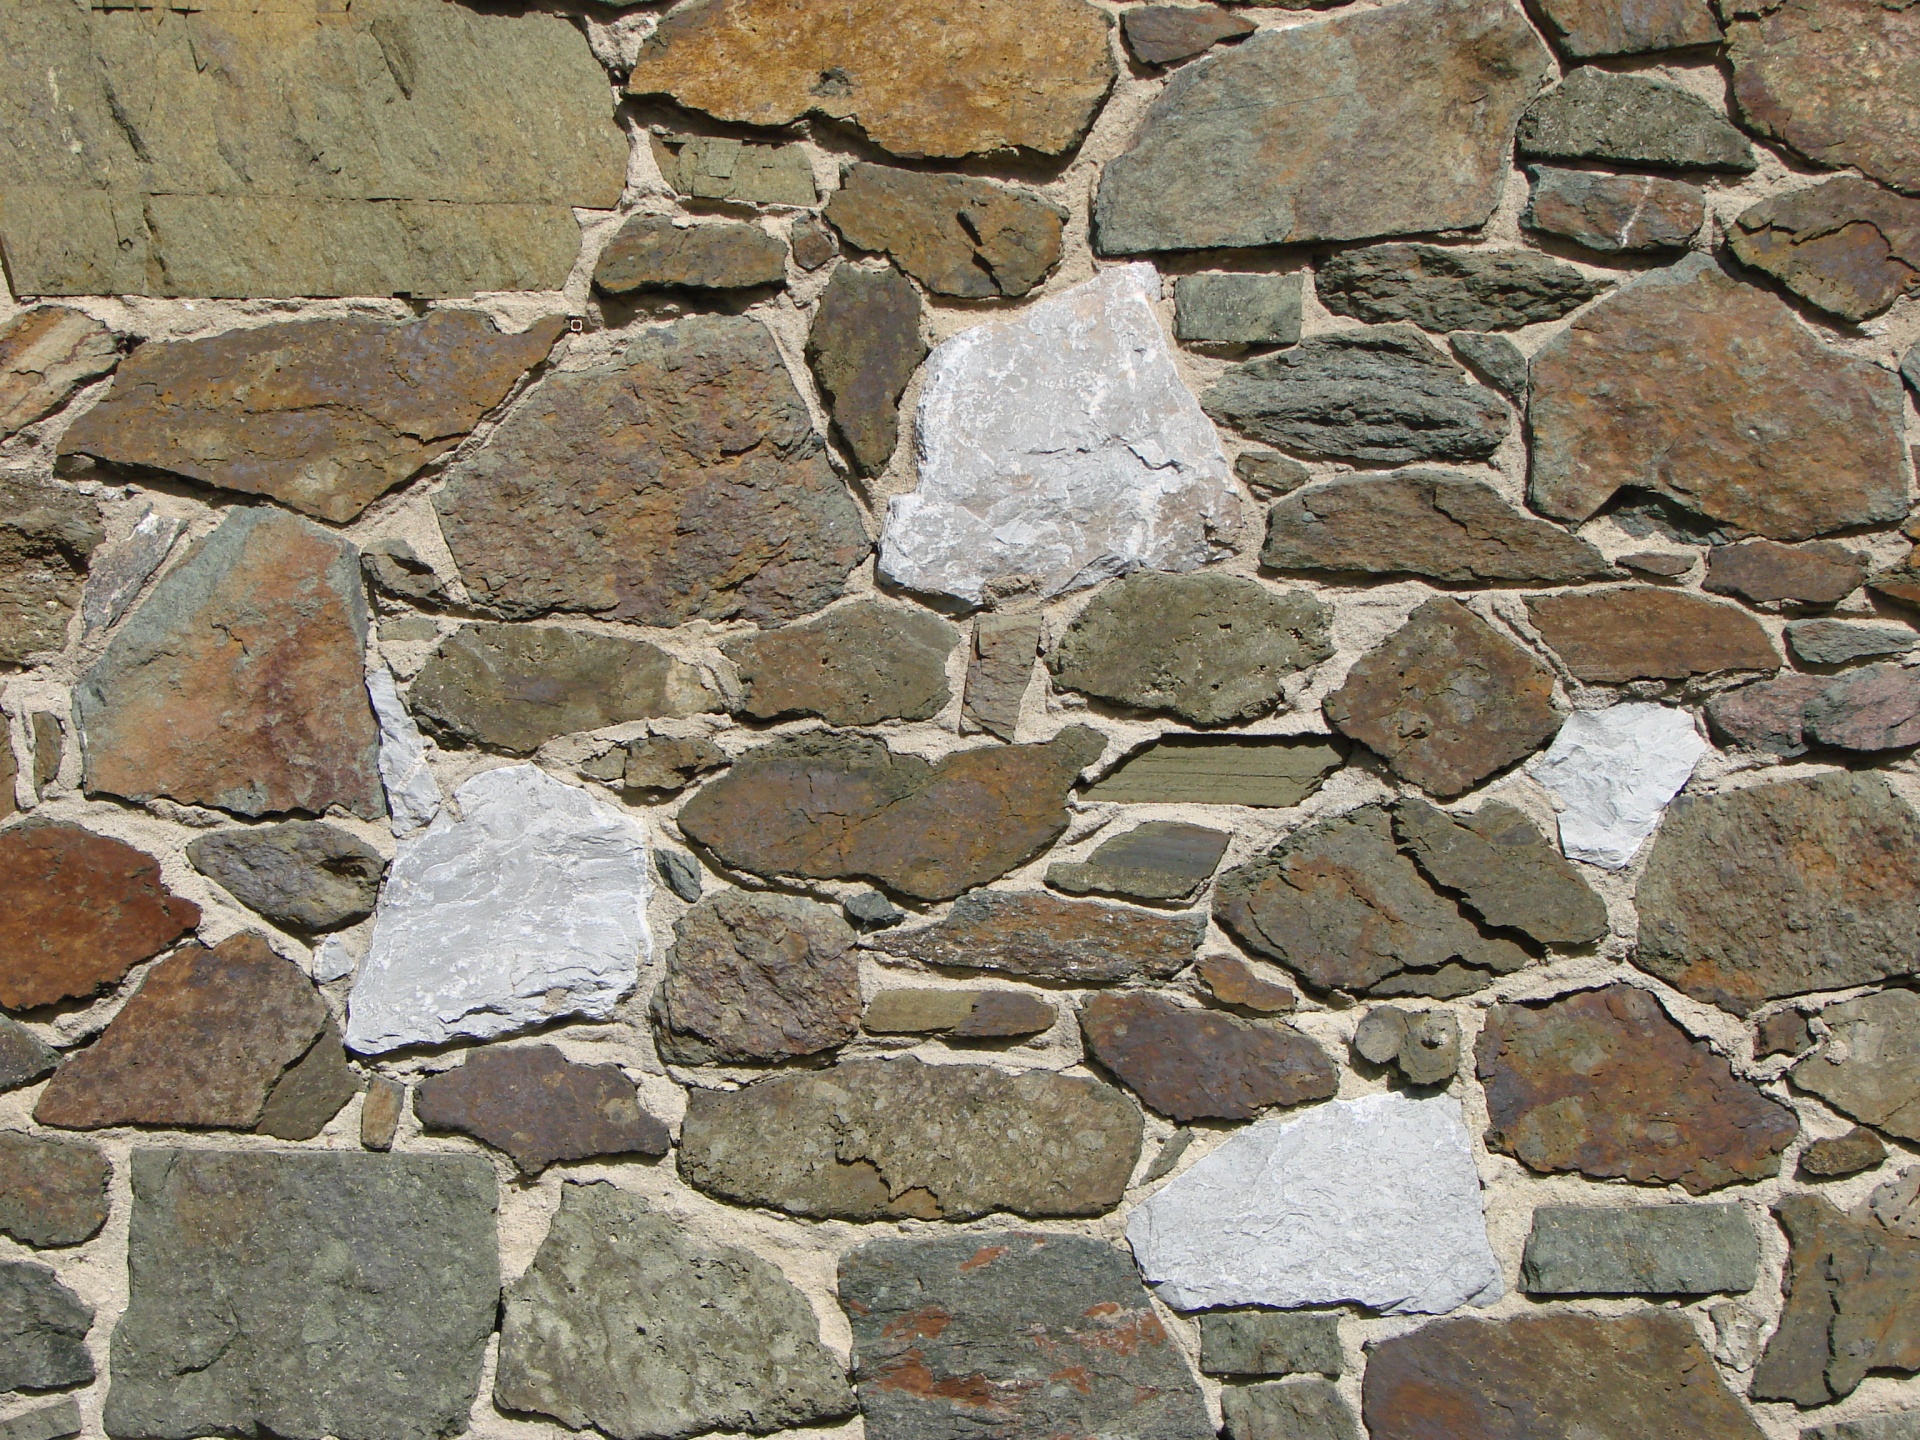 不规则的中世纪石墙